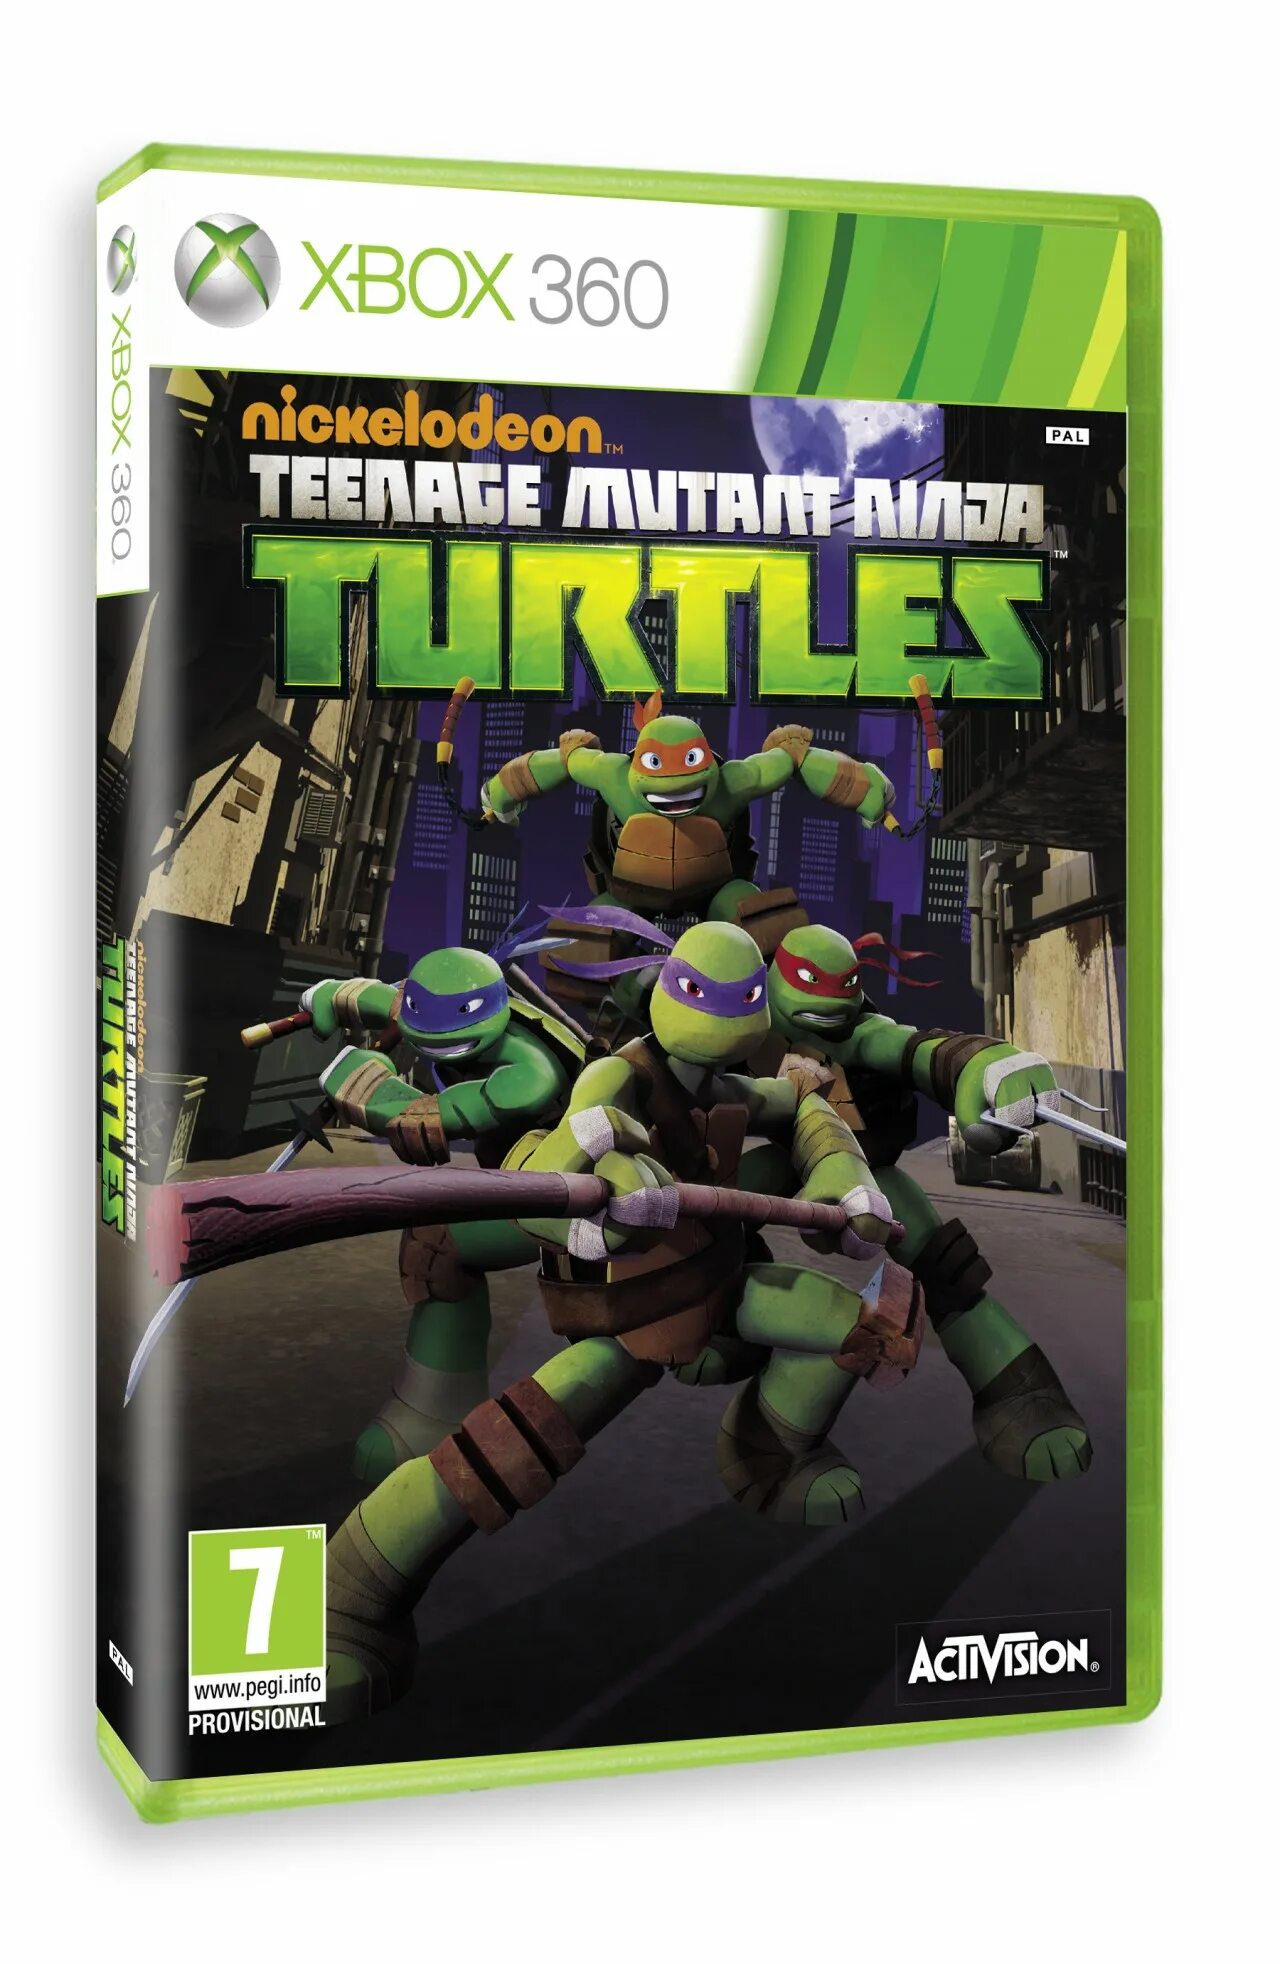 Черепашки ниндзя Xbox 360. Ninja Turtles Xbox 360. Черепашки ниндзя 2012 Xbox 360. TMNT хбокс 360.